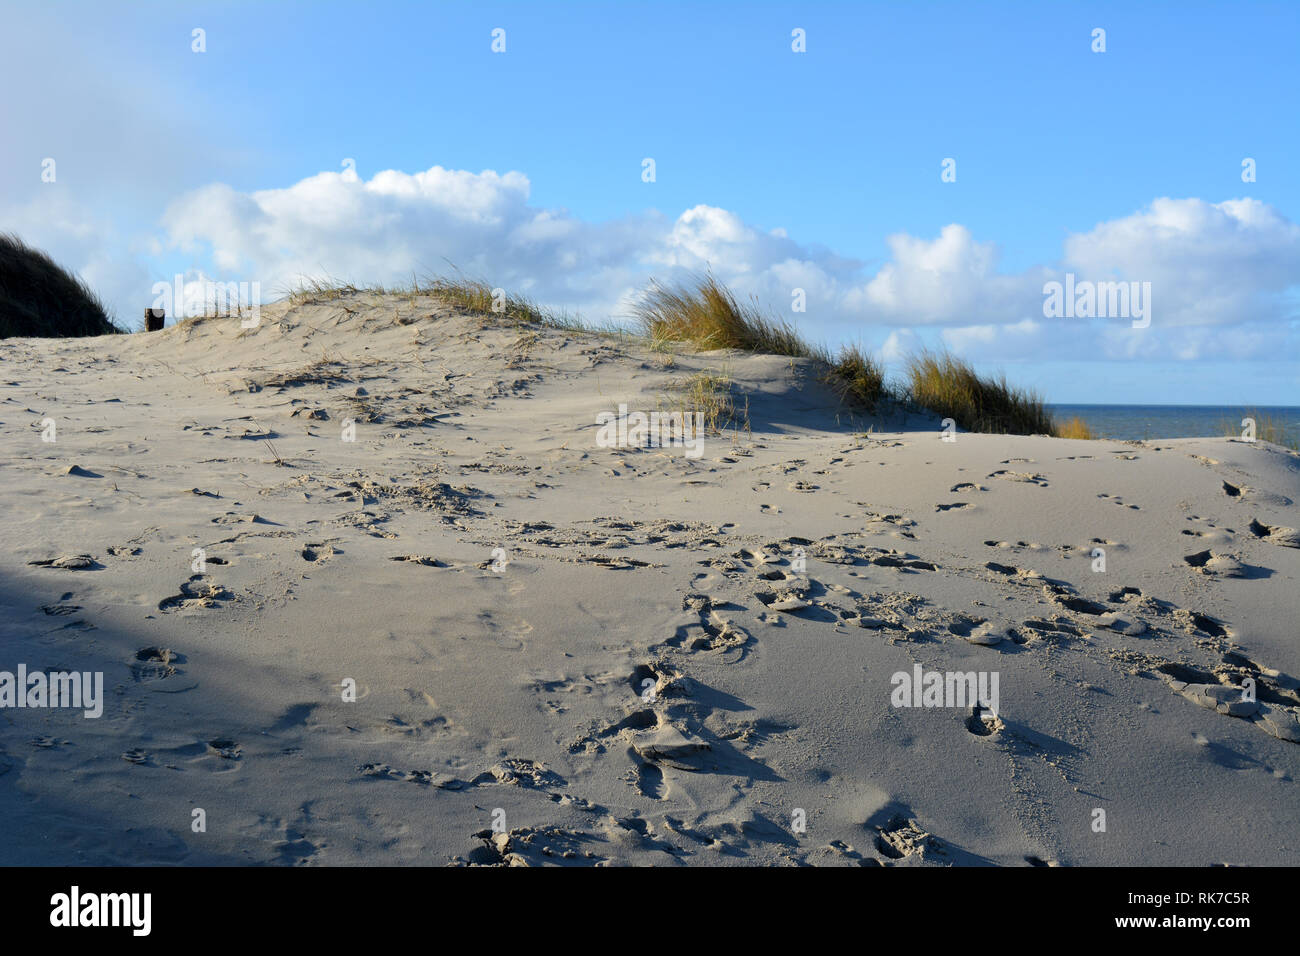 Ansicht zwischen zwei Dünen, mit Strand Gras gewachsen, auf einer Nordsee strand von Texel. Insel in Holland. Stockfoto